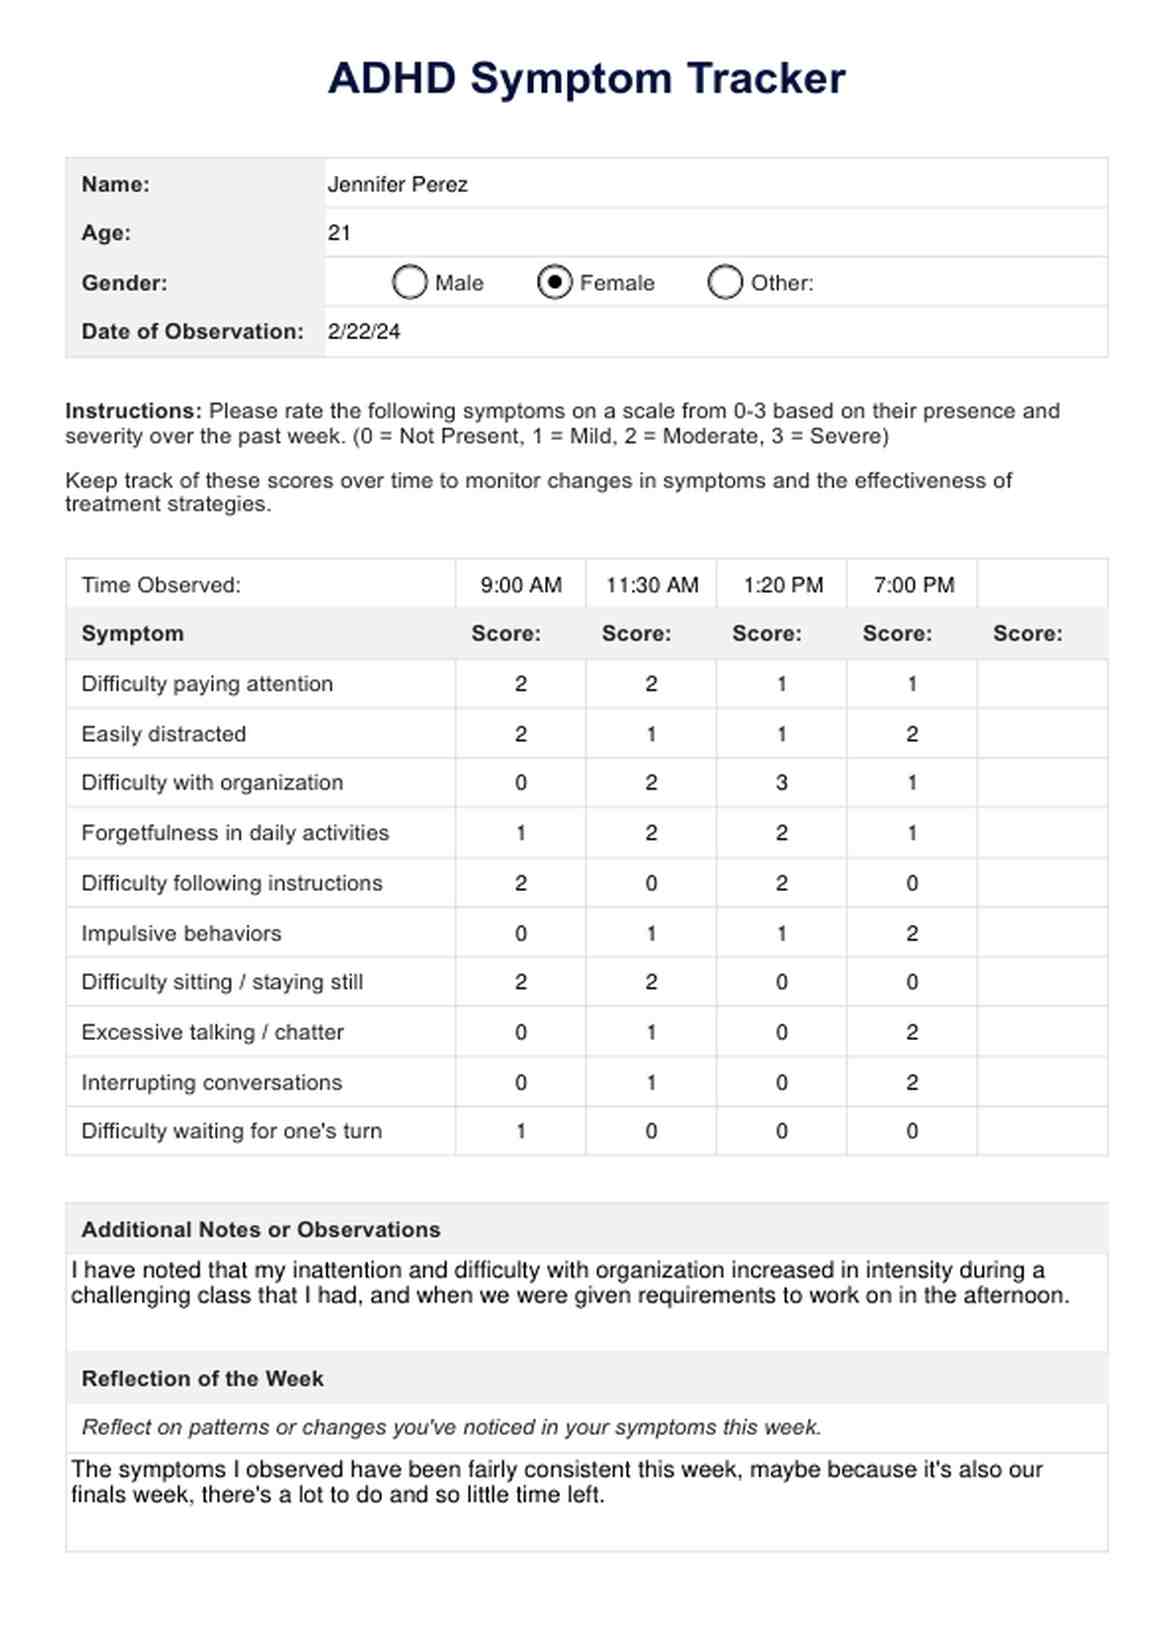 ADHD Symptom Tracker PDF Example